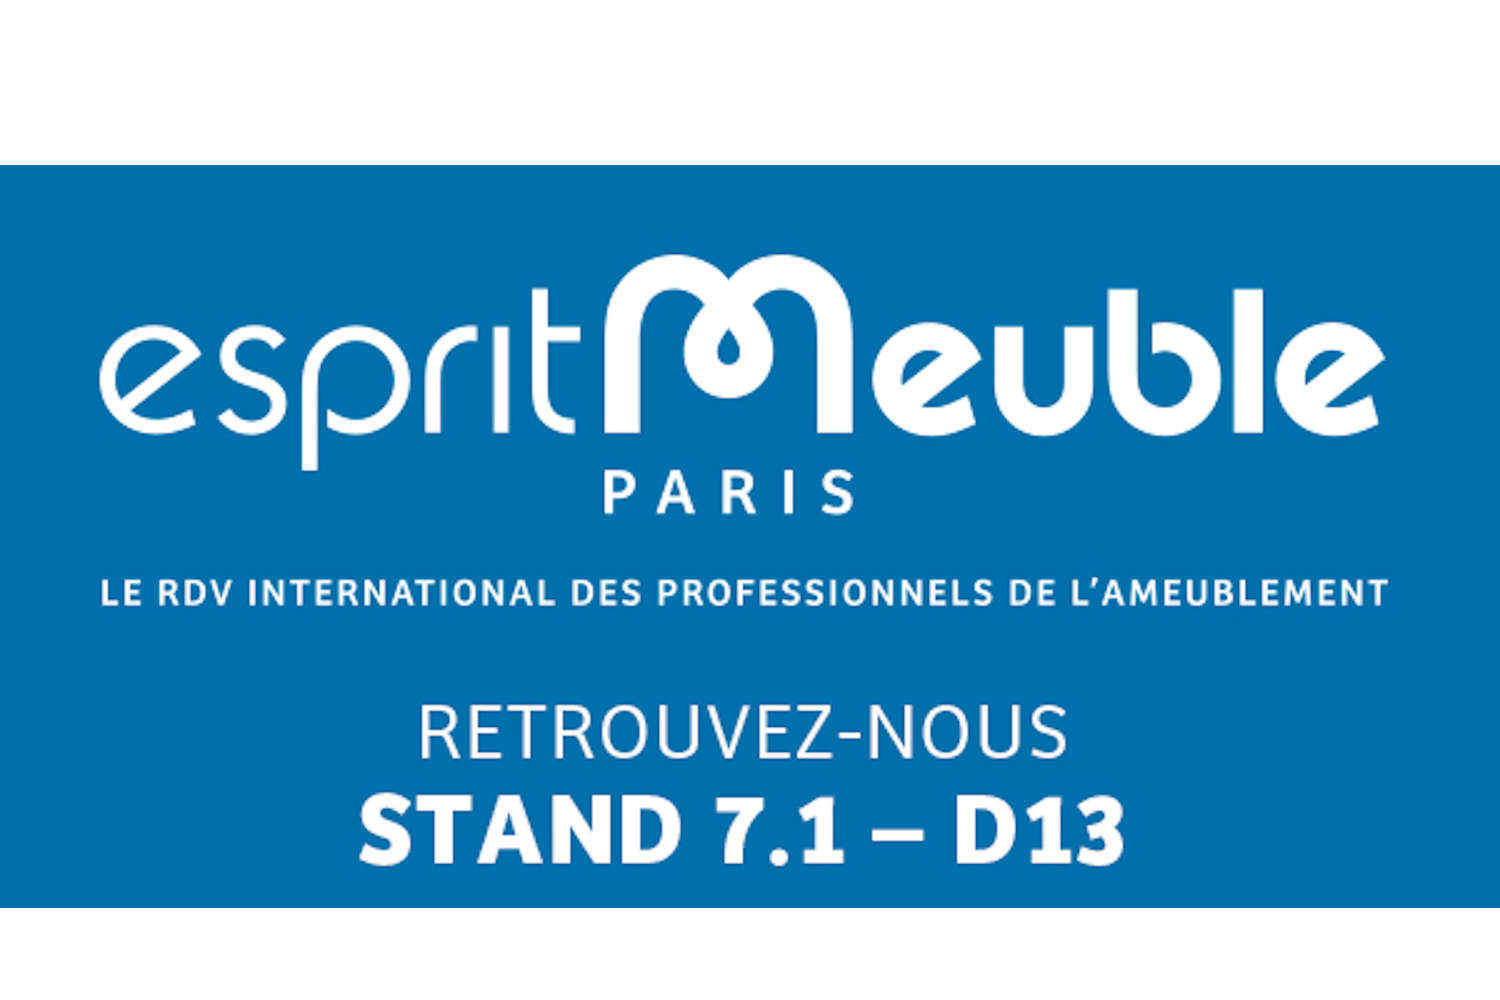 ESPRIT MEUBLE – PARIS 20-22 NOVEMBRE 2022